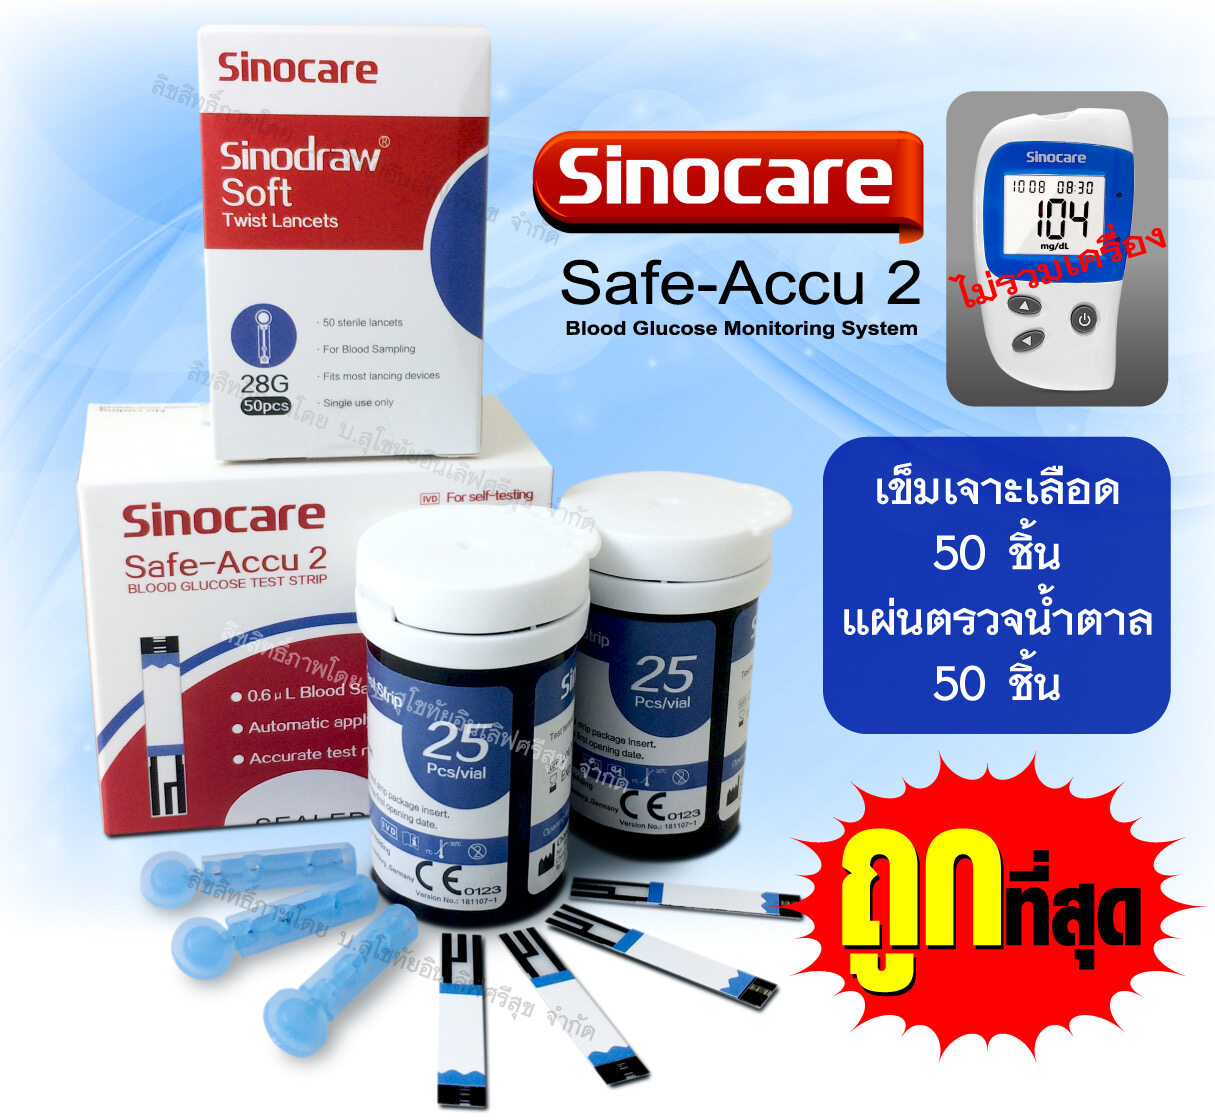 ภาพประกอบของ แผ่นสำหรับเครื่องวัดน้ำตาลในเลือด Sinocare รุ่น Safe-accu2